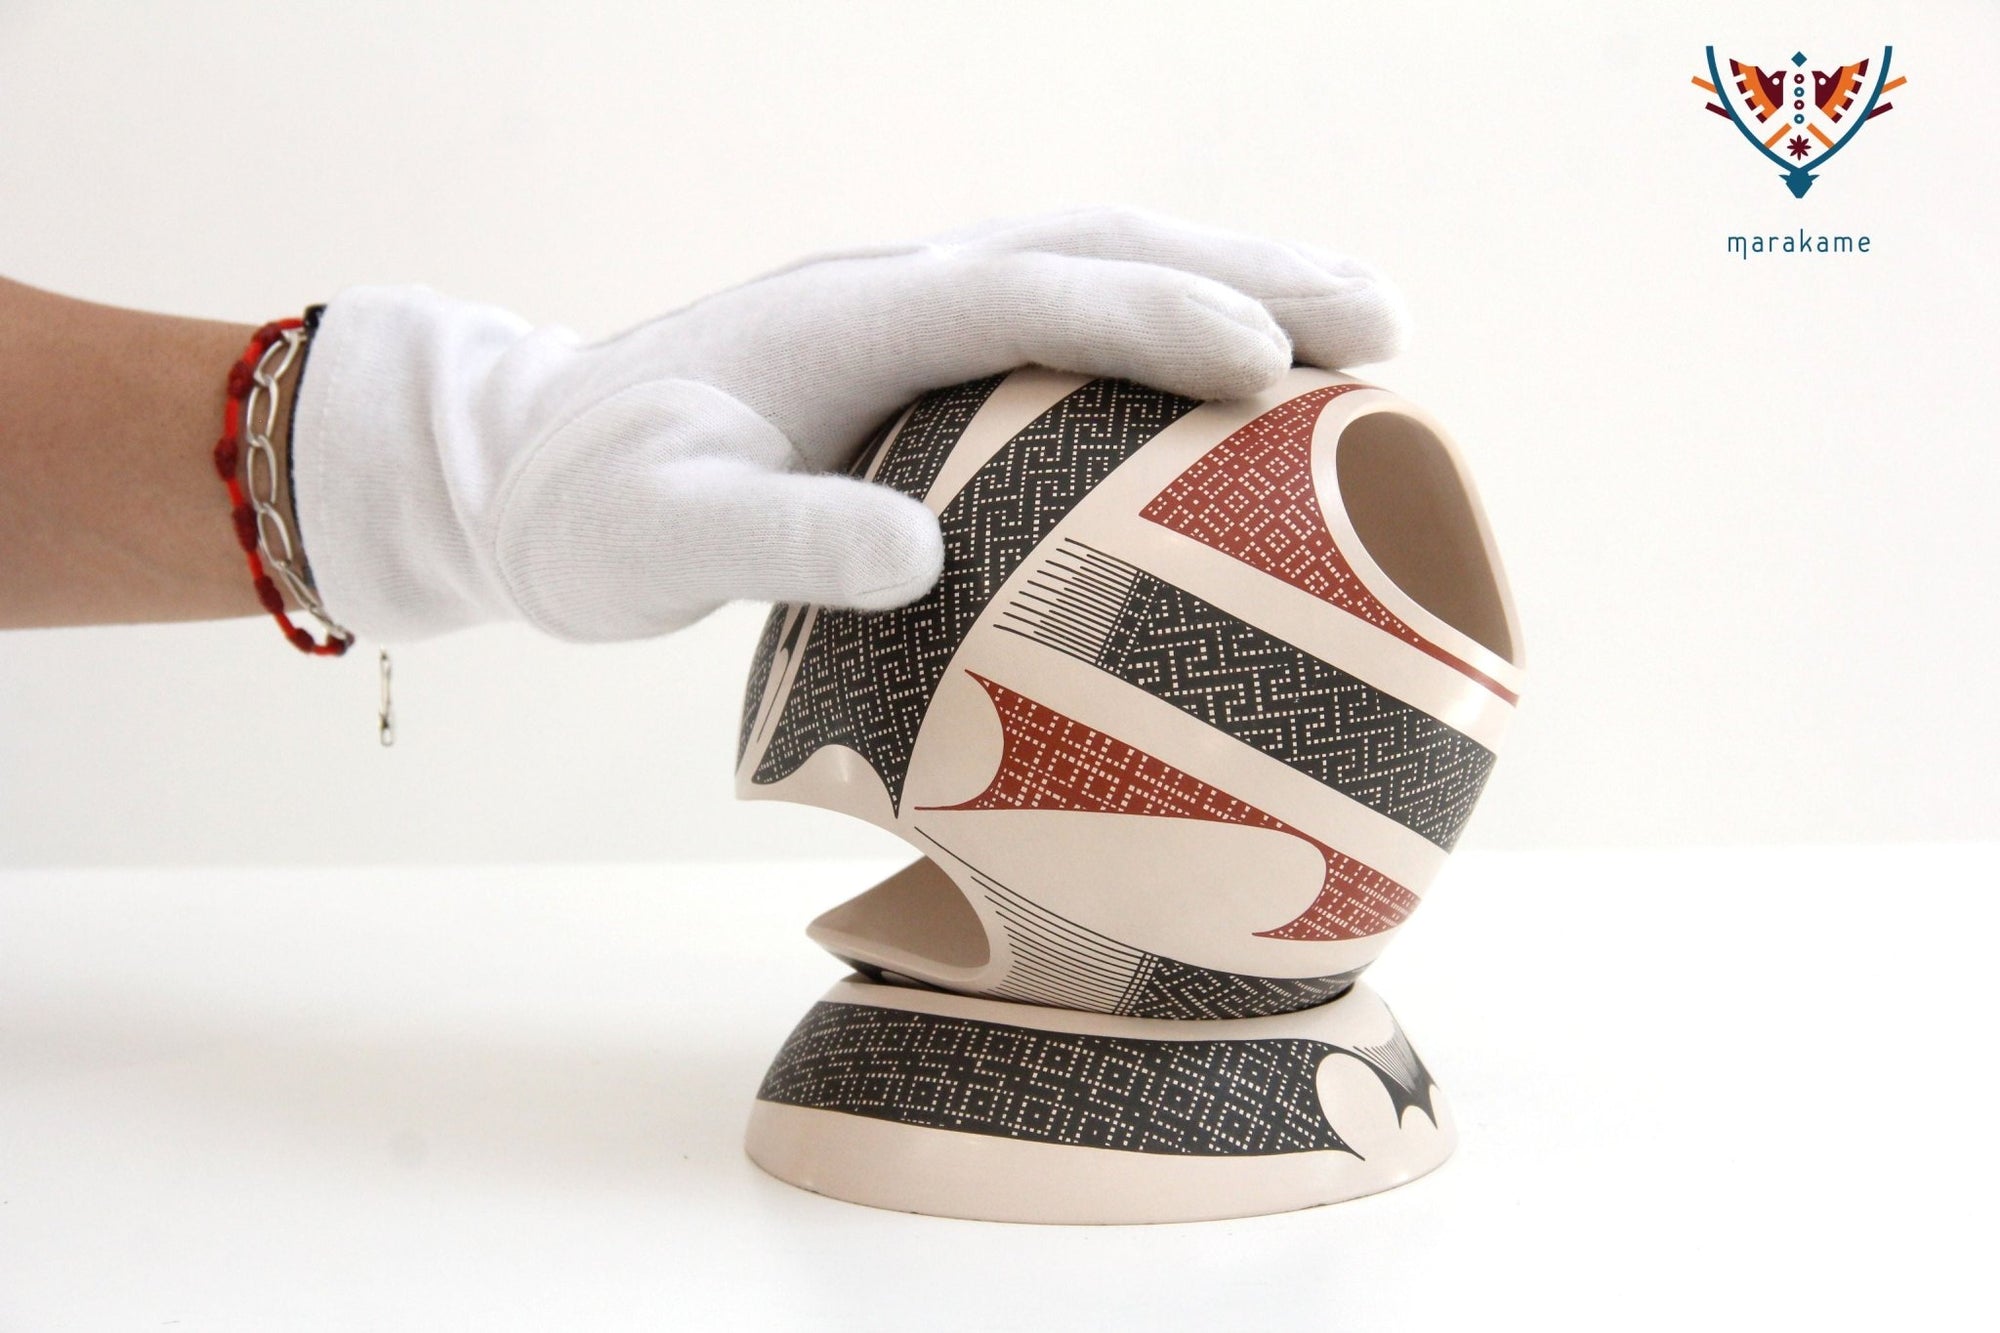 Ceramica Mata Ortiz - Senza fine - Arte Huichol - Marakame